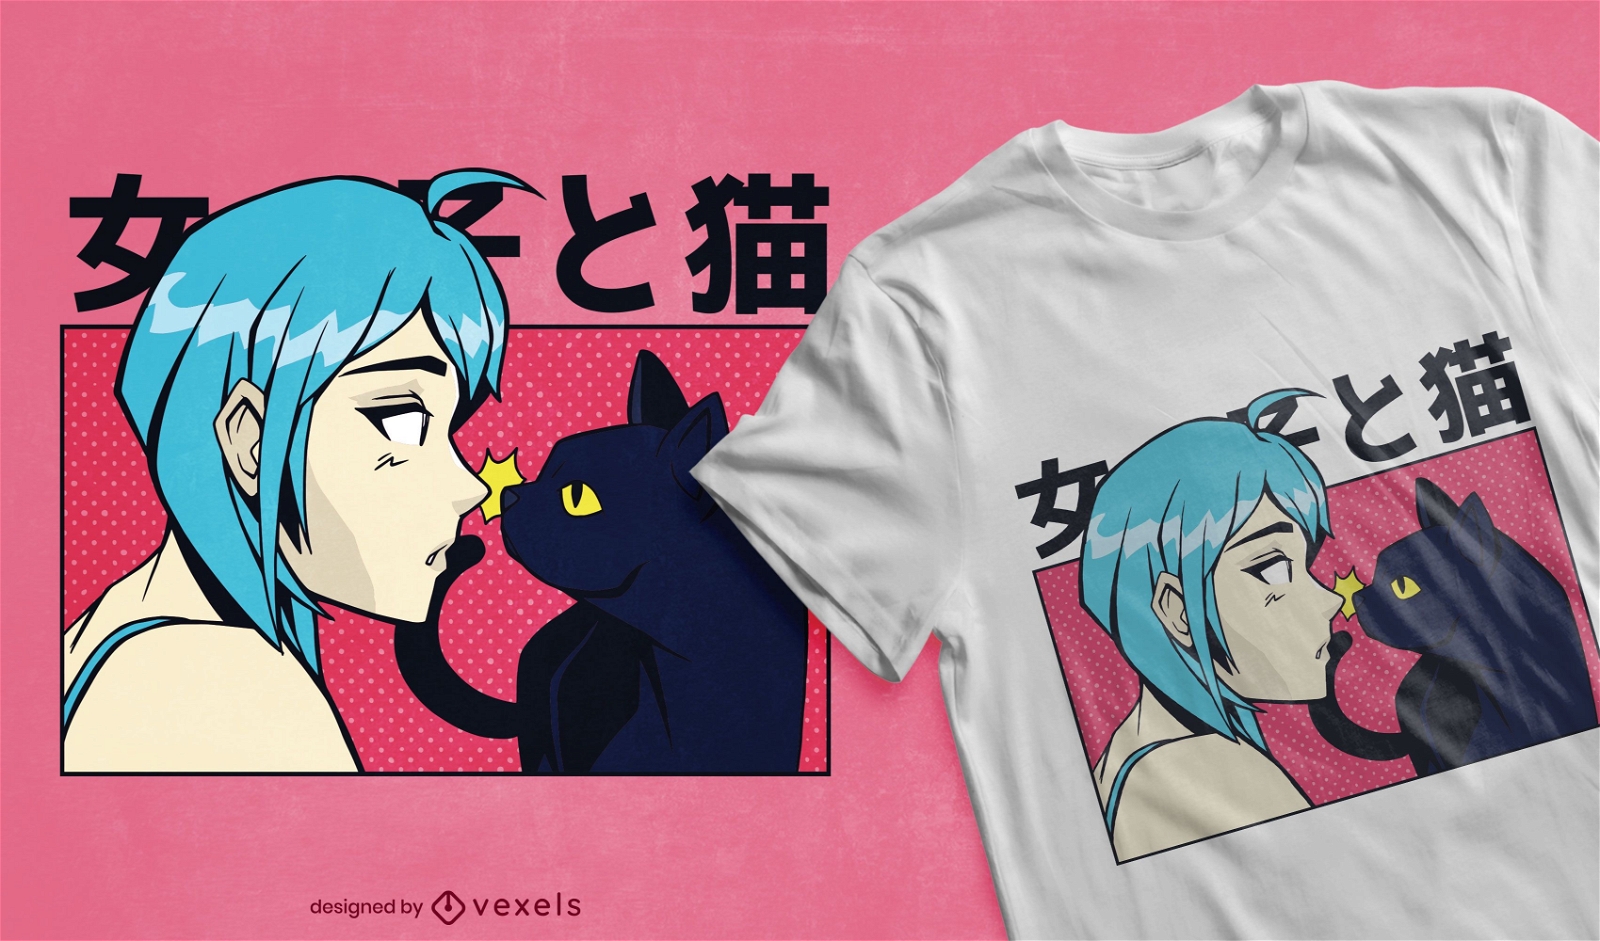 Anime girl cat t-shirt design